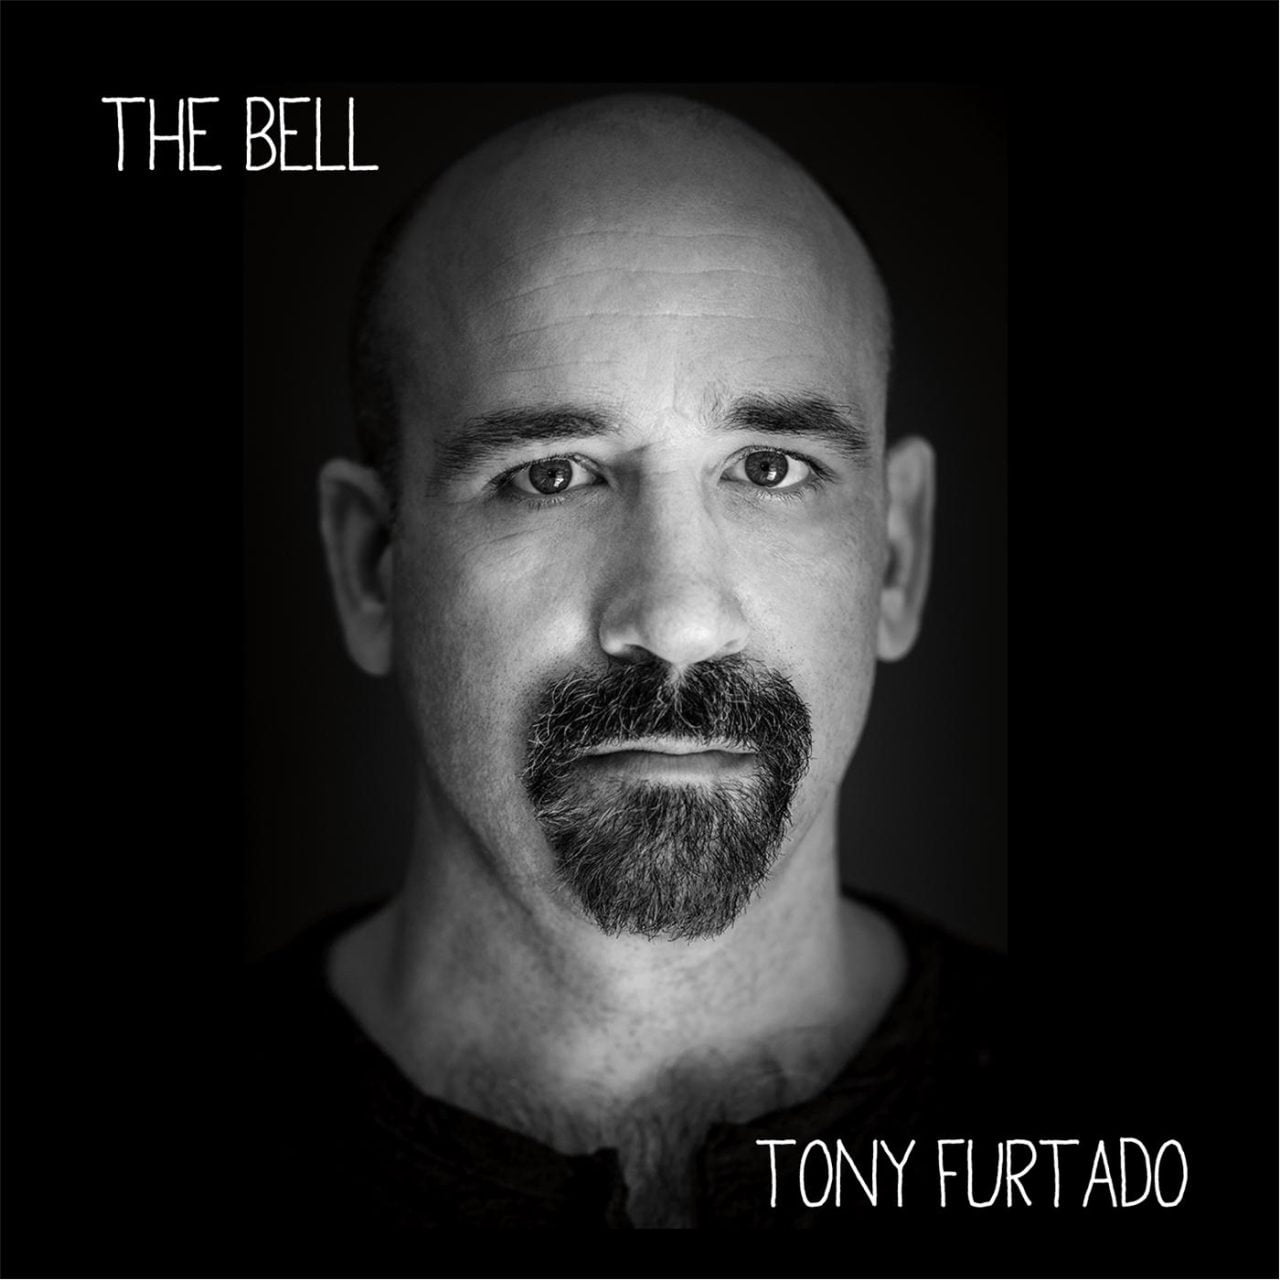 Tony Furtado - The Bell cover album